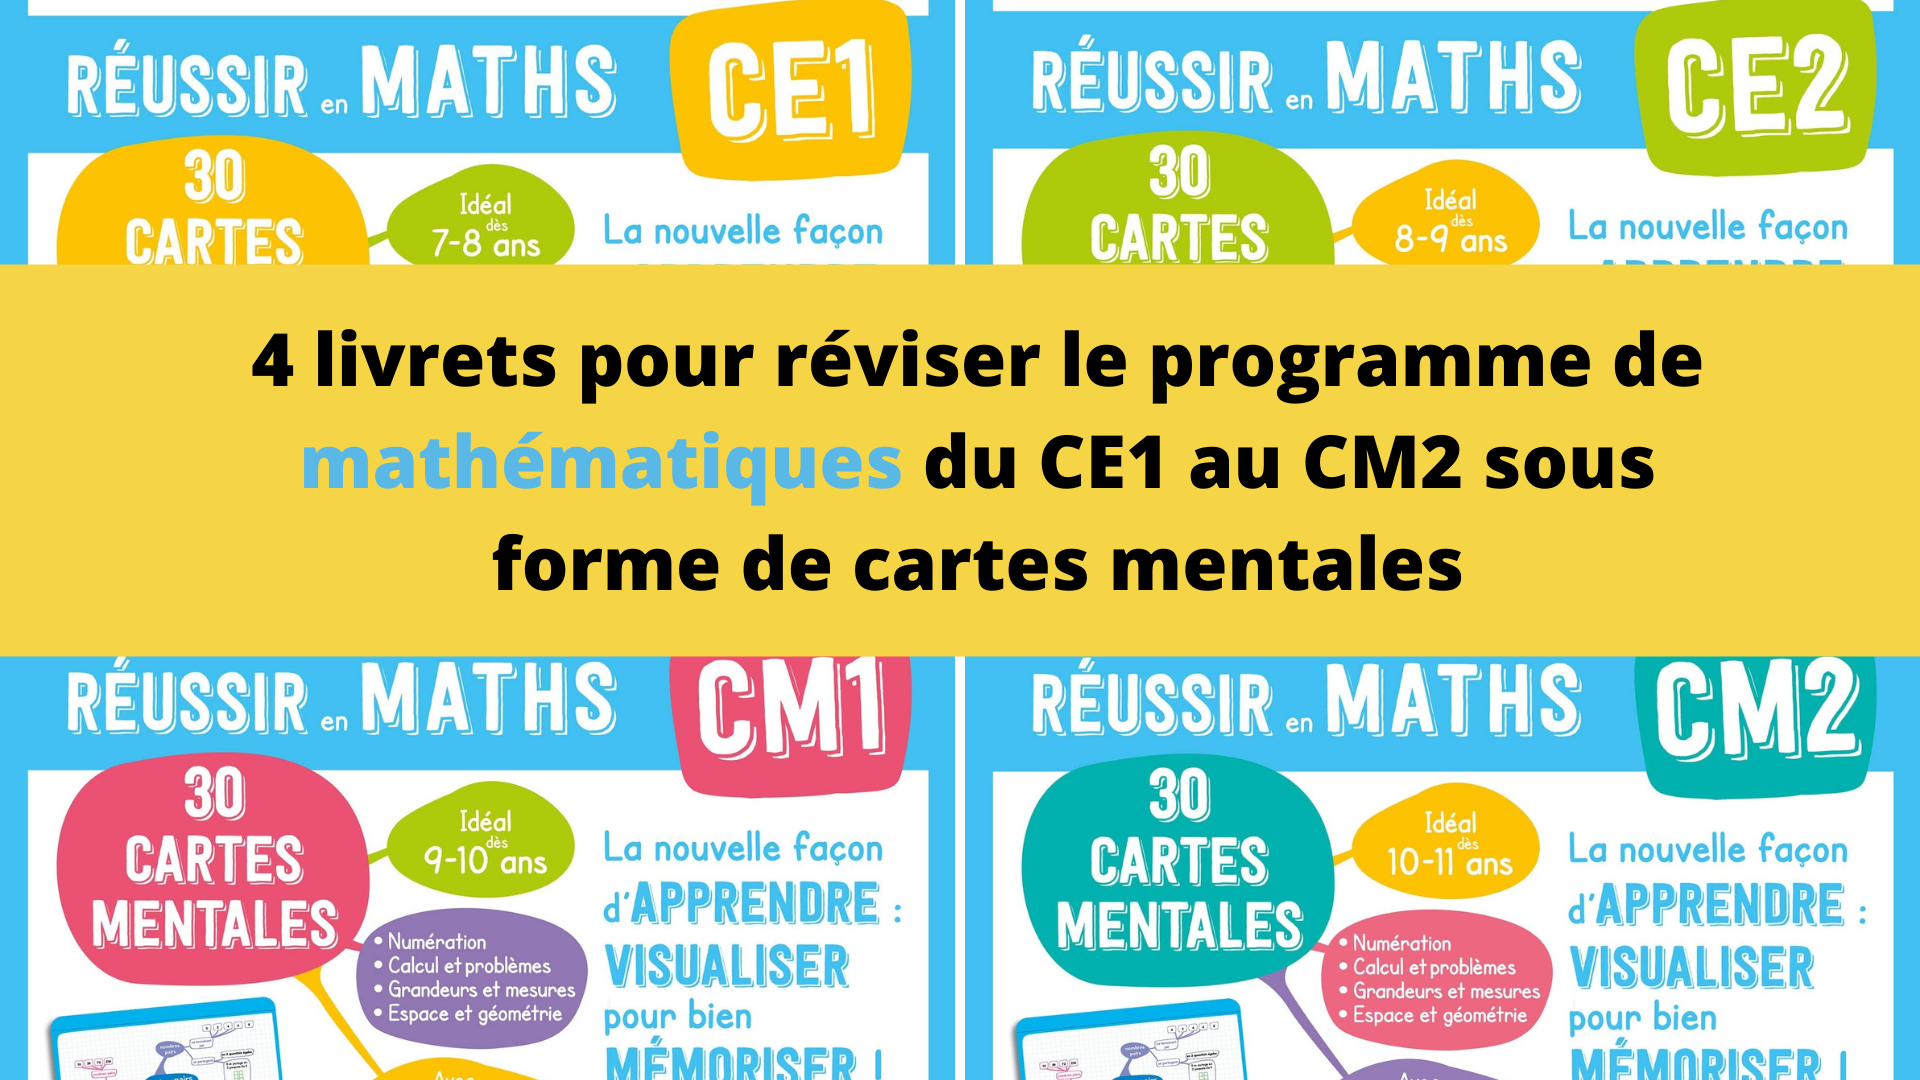 4 livrets pour réviser le programme de mathématiques du CE1 au CM2 sous forme de cartes mentales